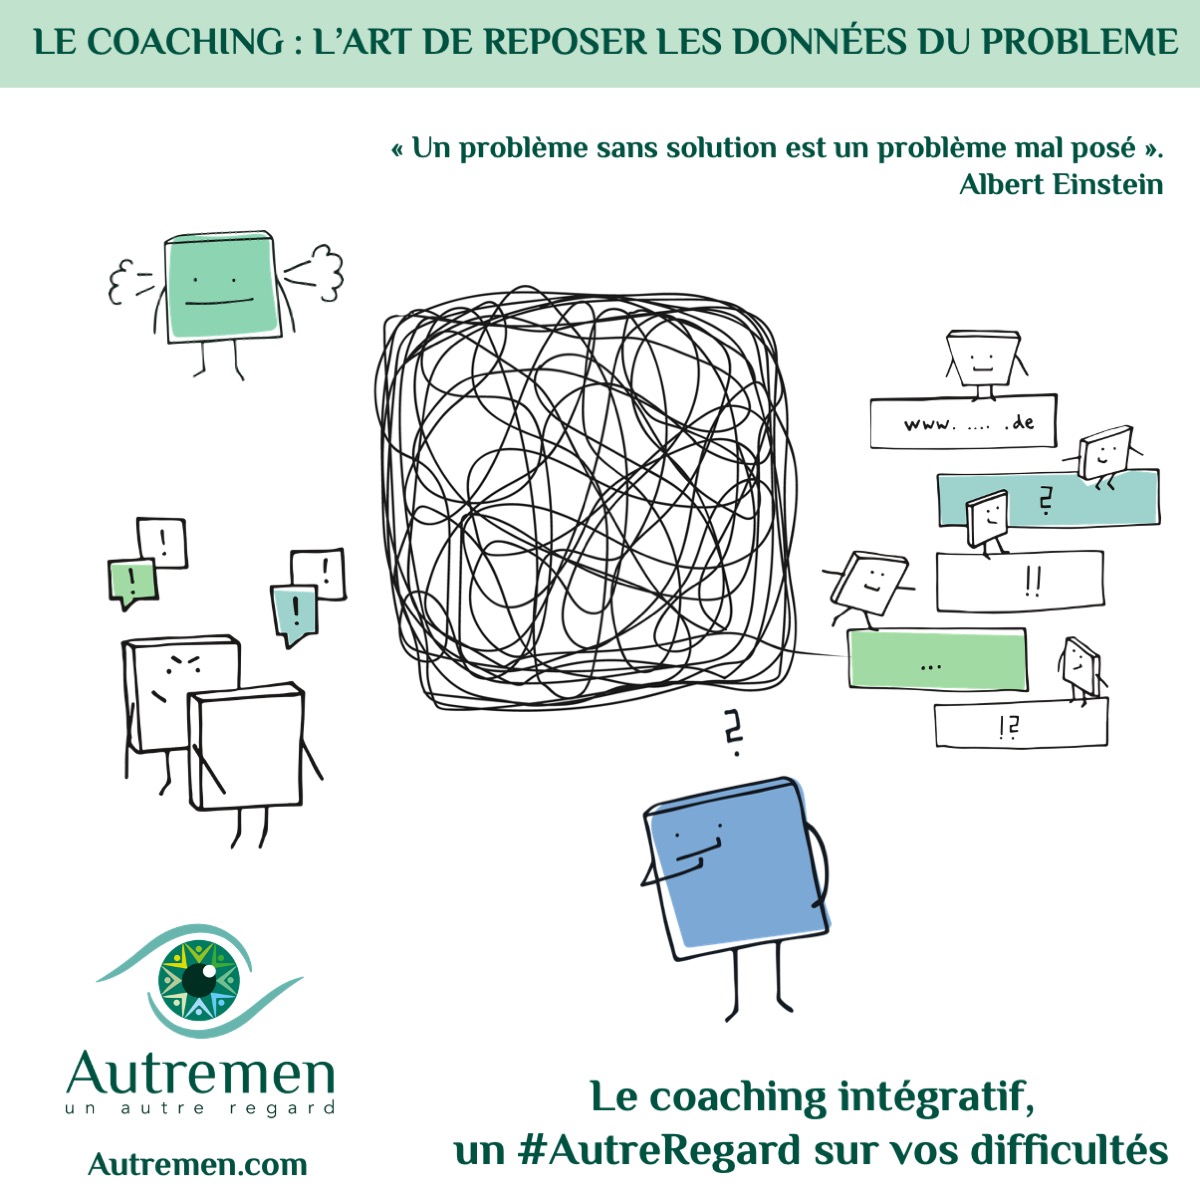 le coaching intégratif : l'art de reposer les données du problème un coaching systémique global qui analyse de façon holistique la situation